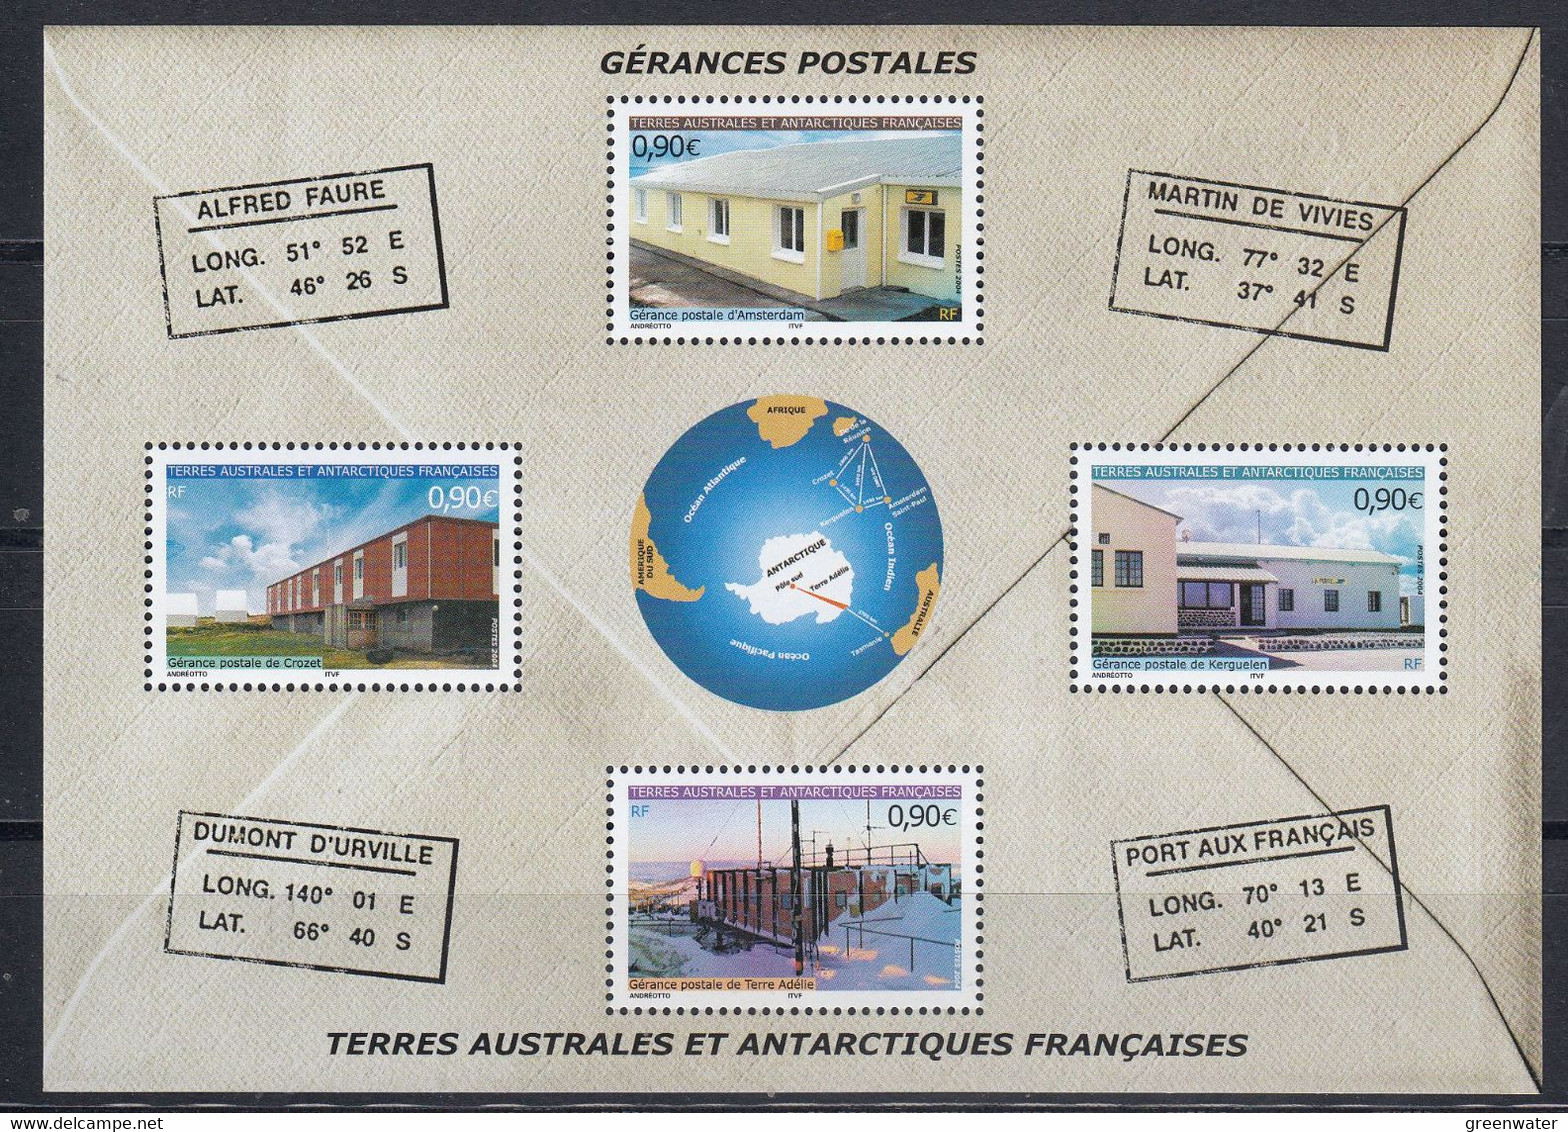 TAAF 2004 Gerances Postales M/s ** Mnh (51701) - Blocs-feuillets